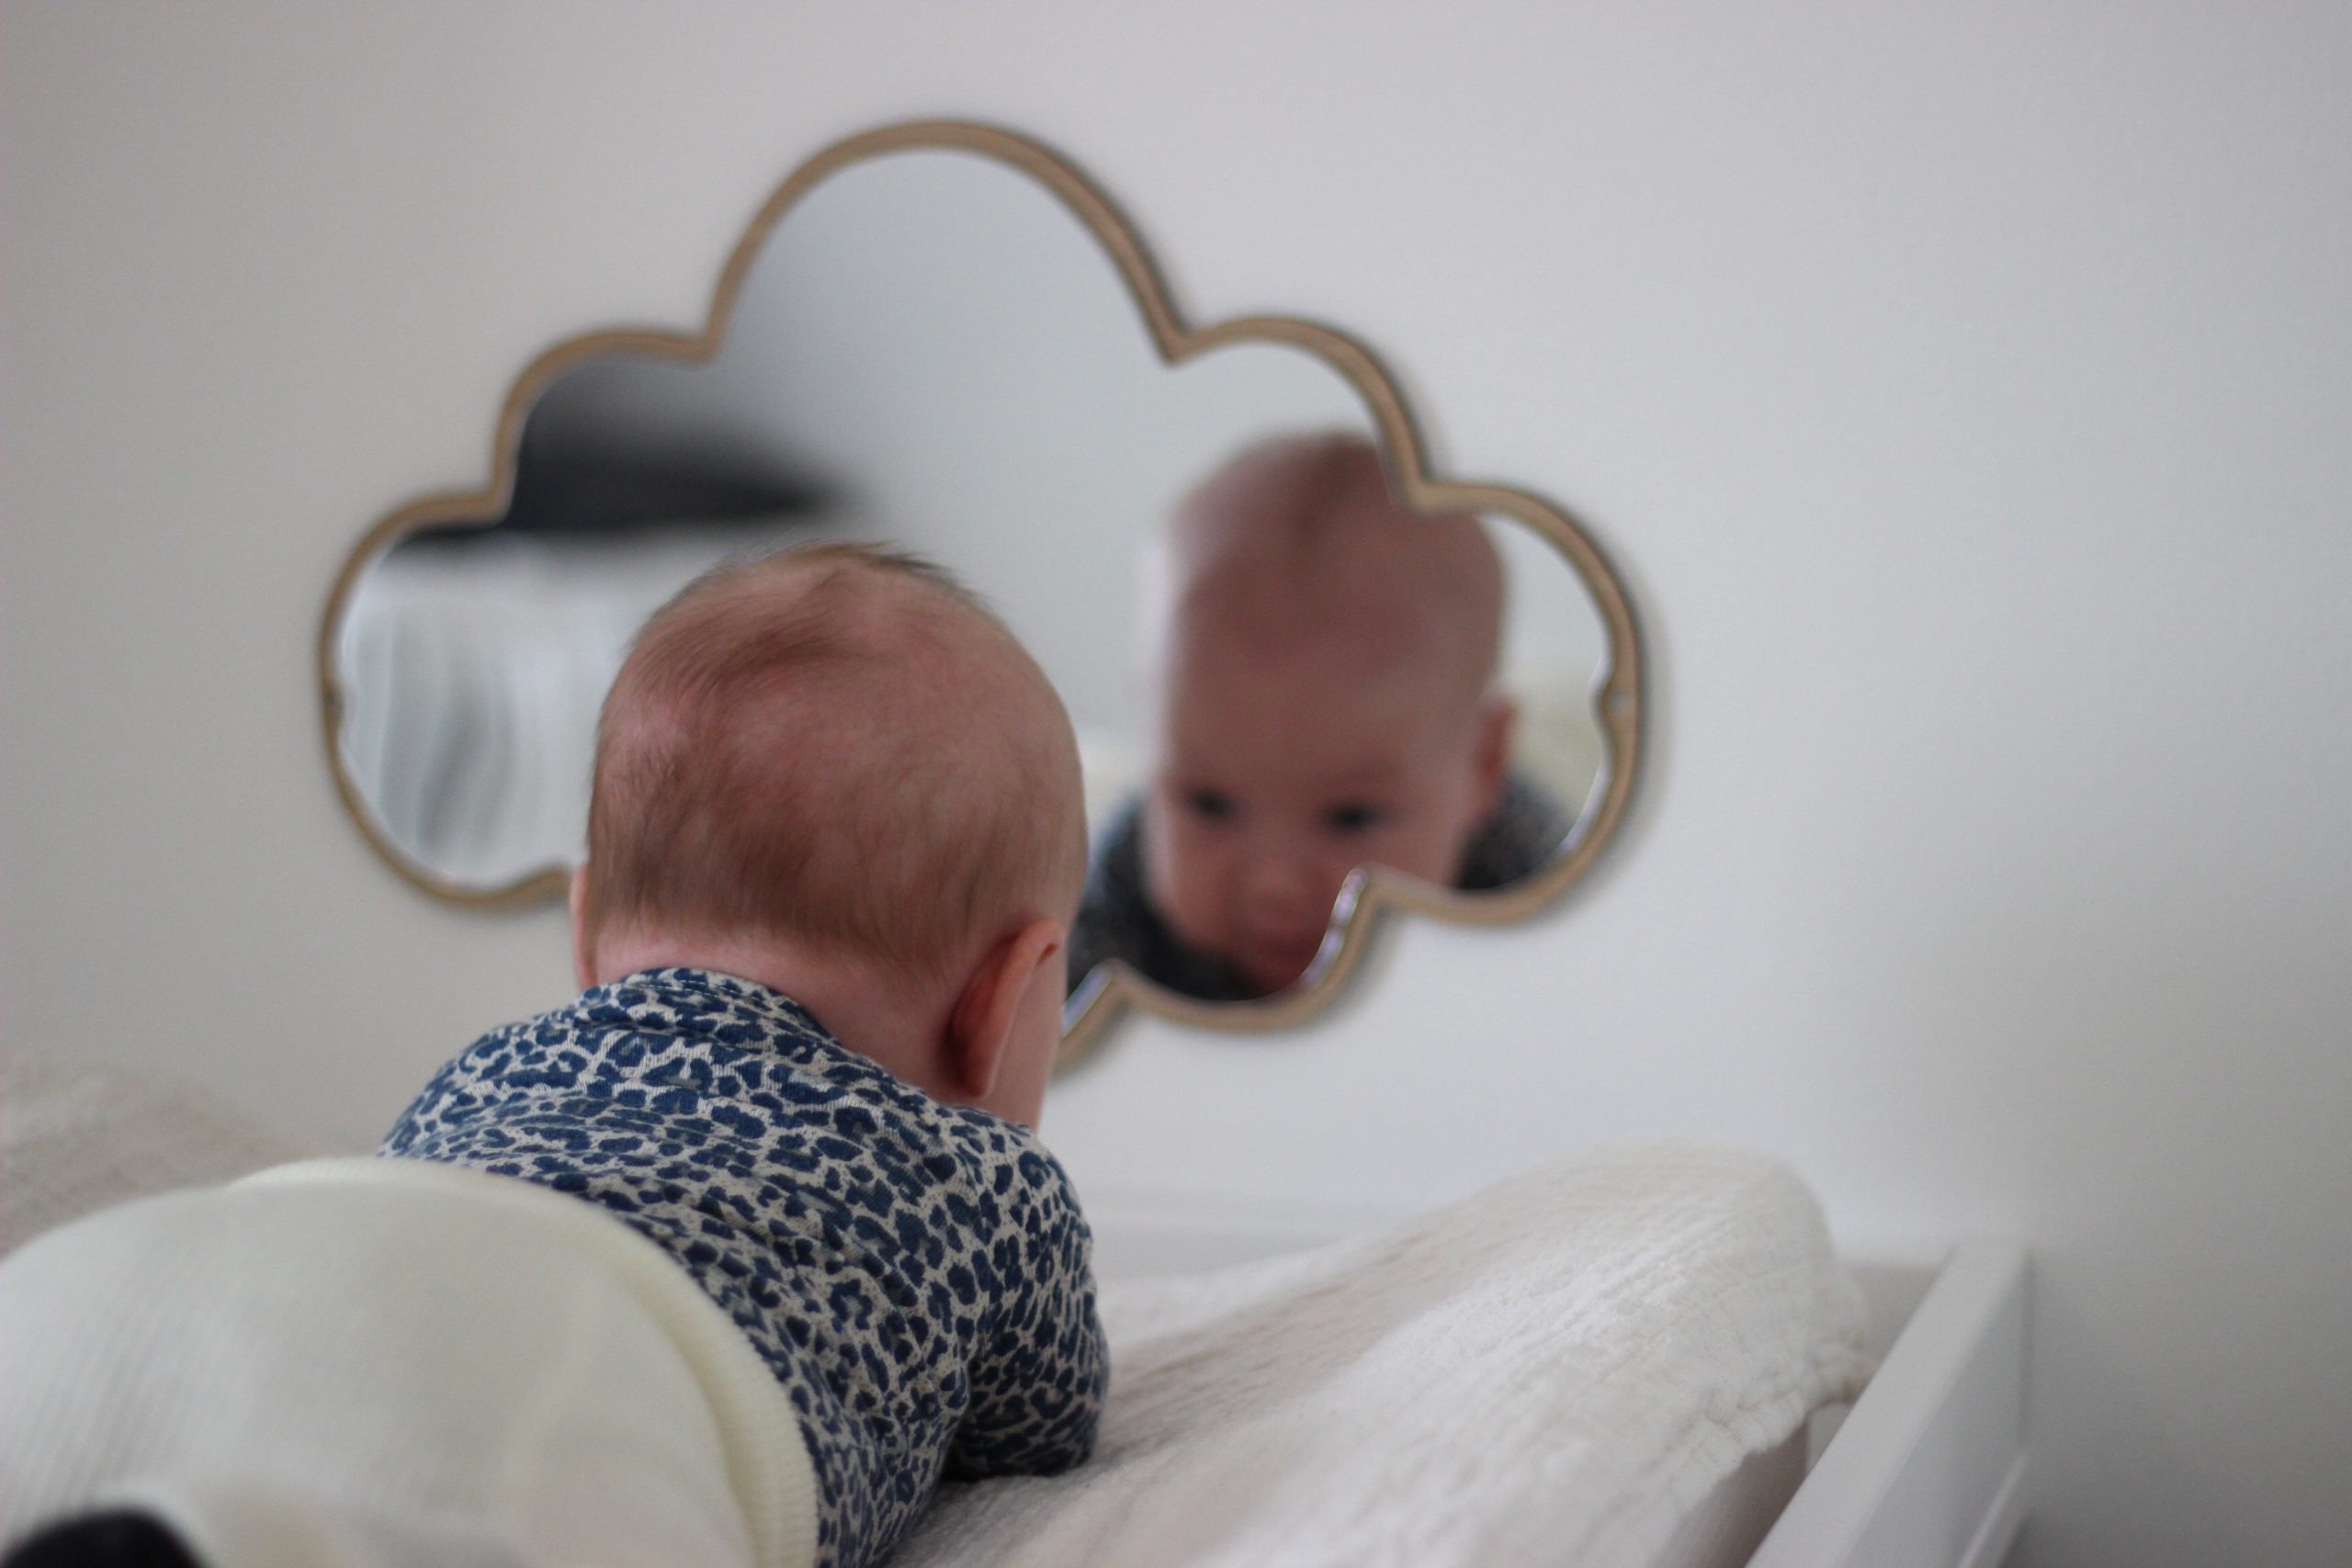 La question de la semaine. Que fait l'enfant devant le miroir ?